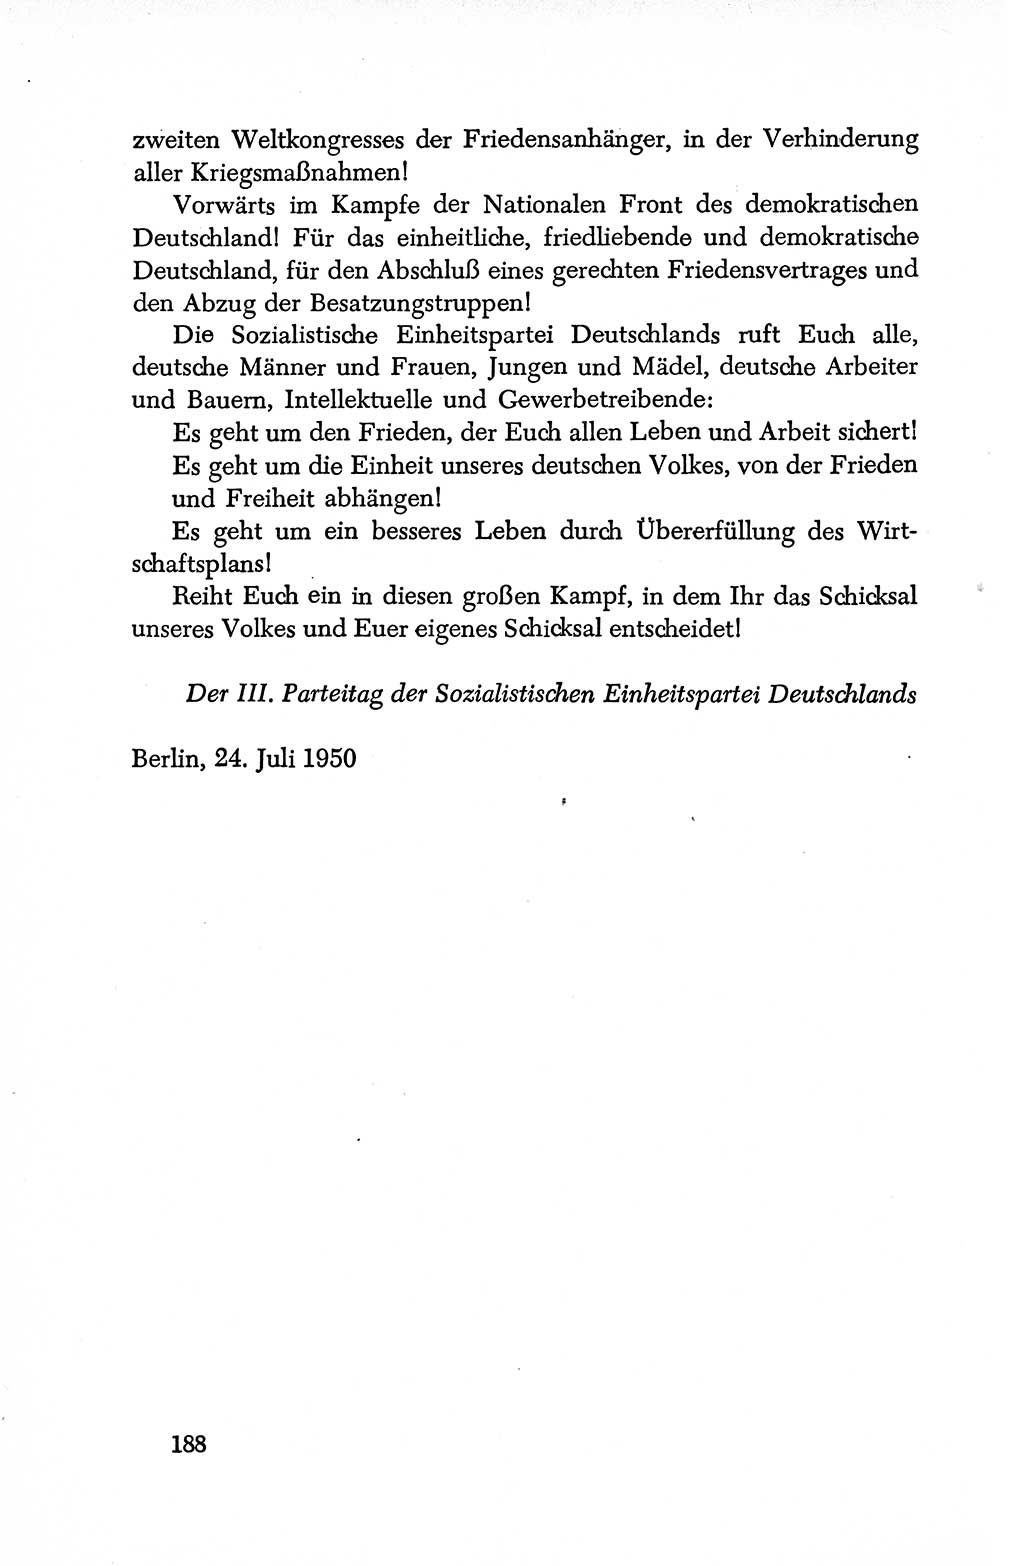 Dokumente der Sozialistischen Einheitspartei Deutschlands (SED) [Deutsche Demokratische Republik (DDR)] 1950-1952, Seite 188 (Dok. SED DDR 1950-1952, S. 188)